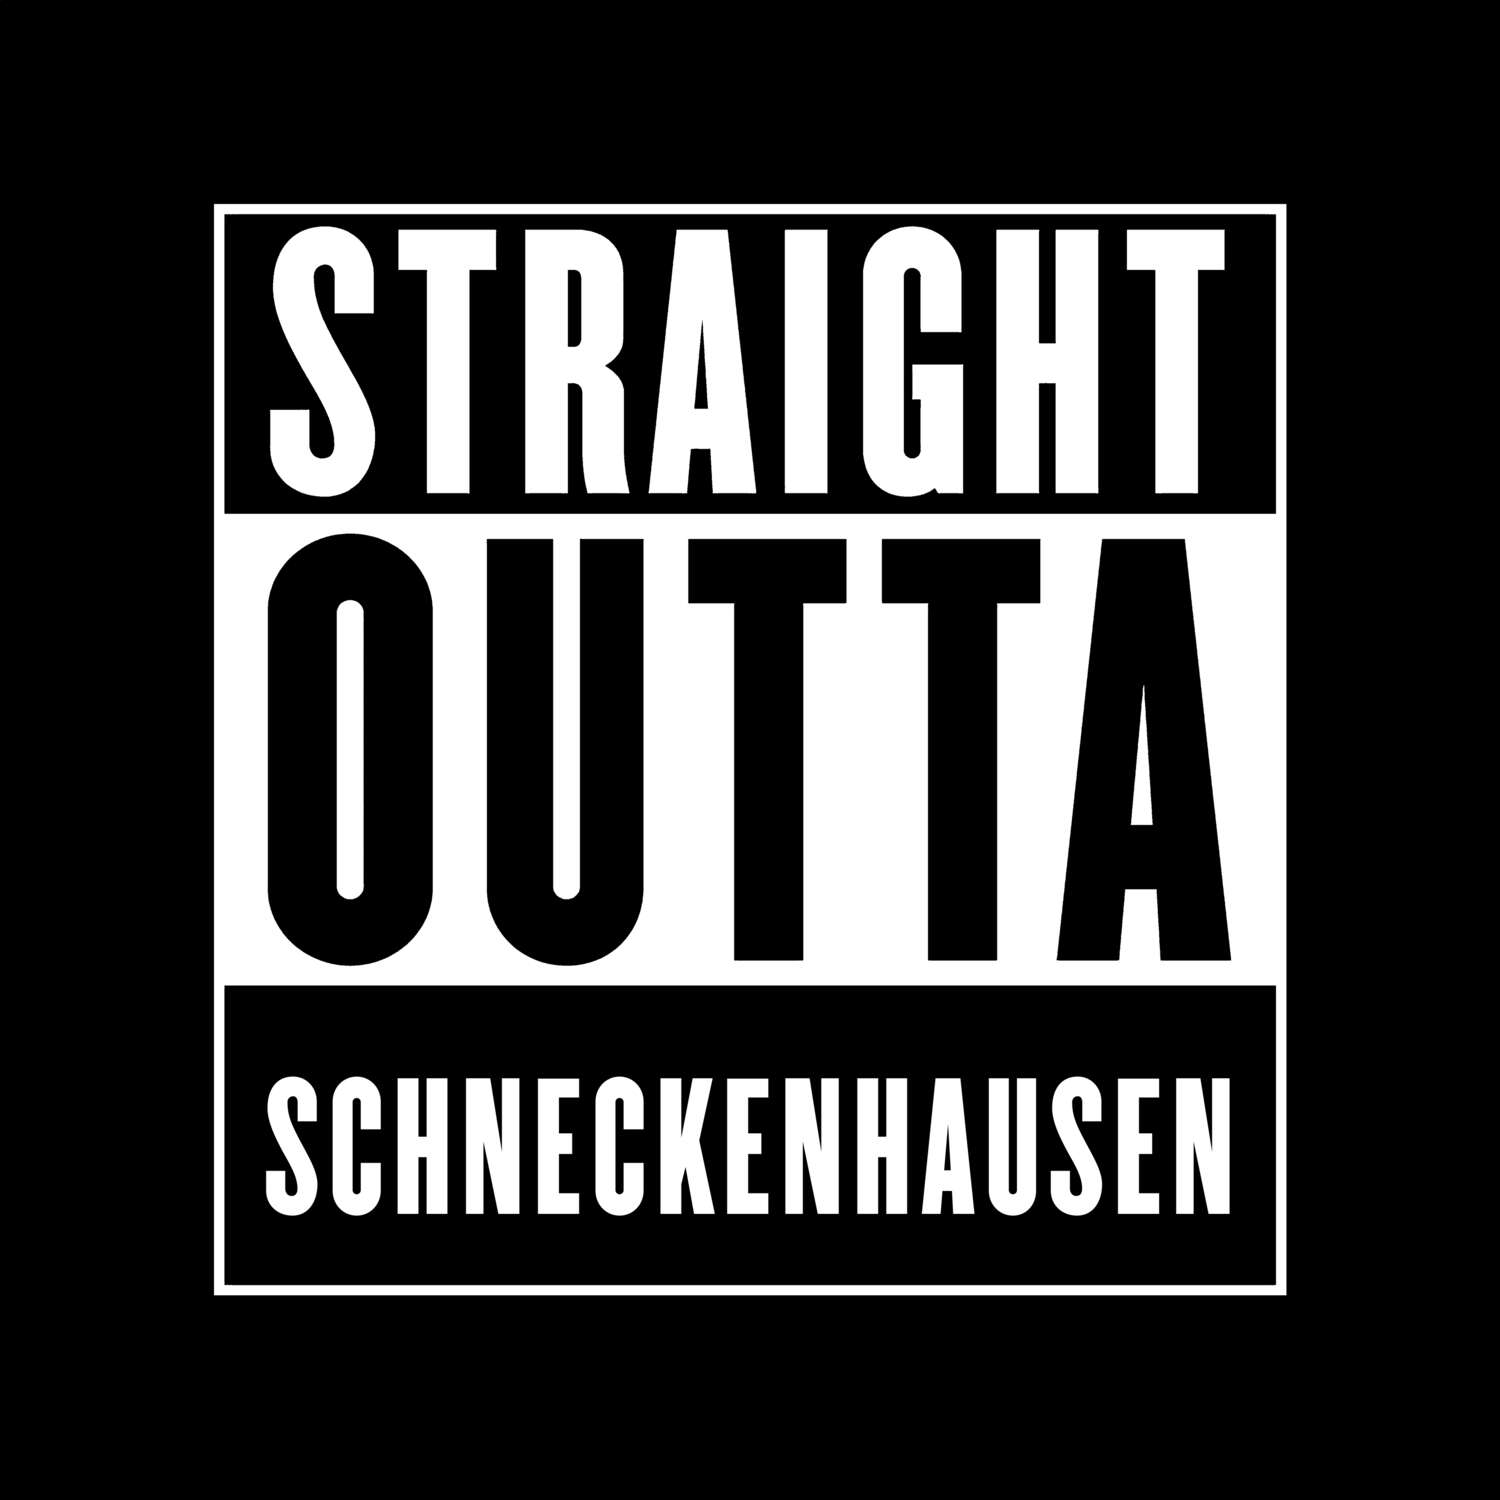 Schneckenhausen T-Shirt »Straight Outta«